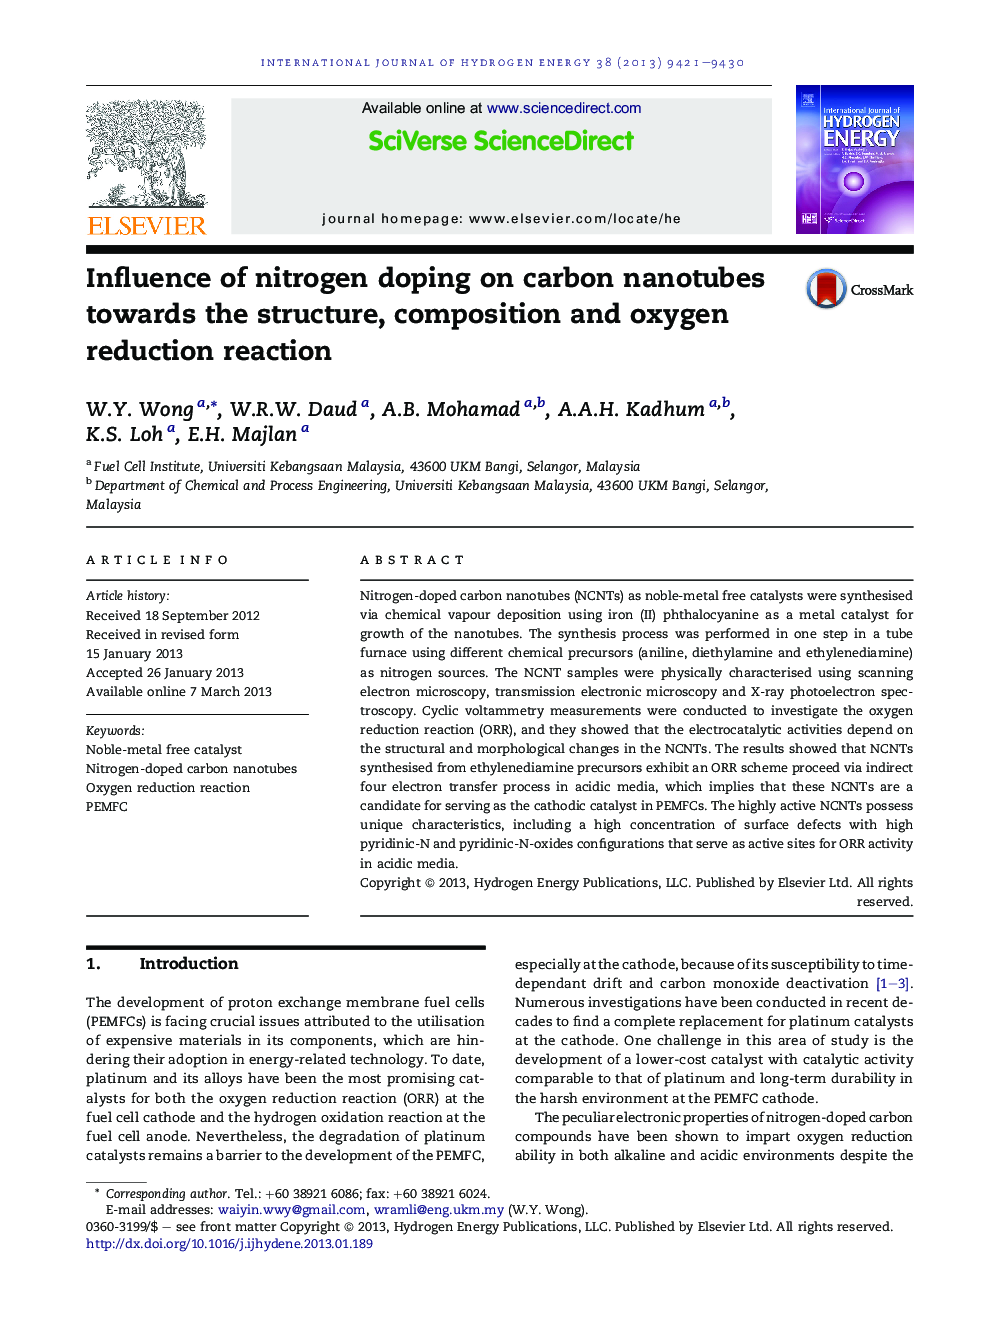 تاثیر دوپینگ نیتروژن بر نانولوله های کربن نسبت به واکنش ساختار، ترکیب و کاهش اکسیژن 